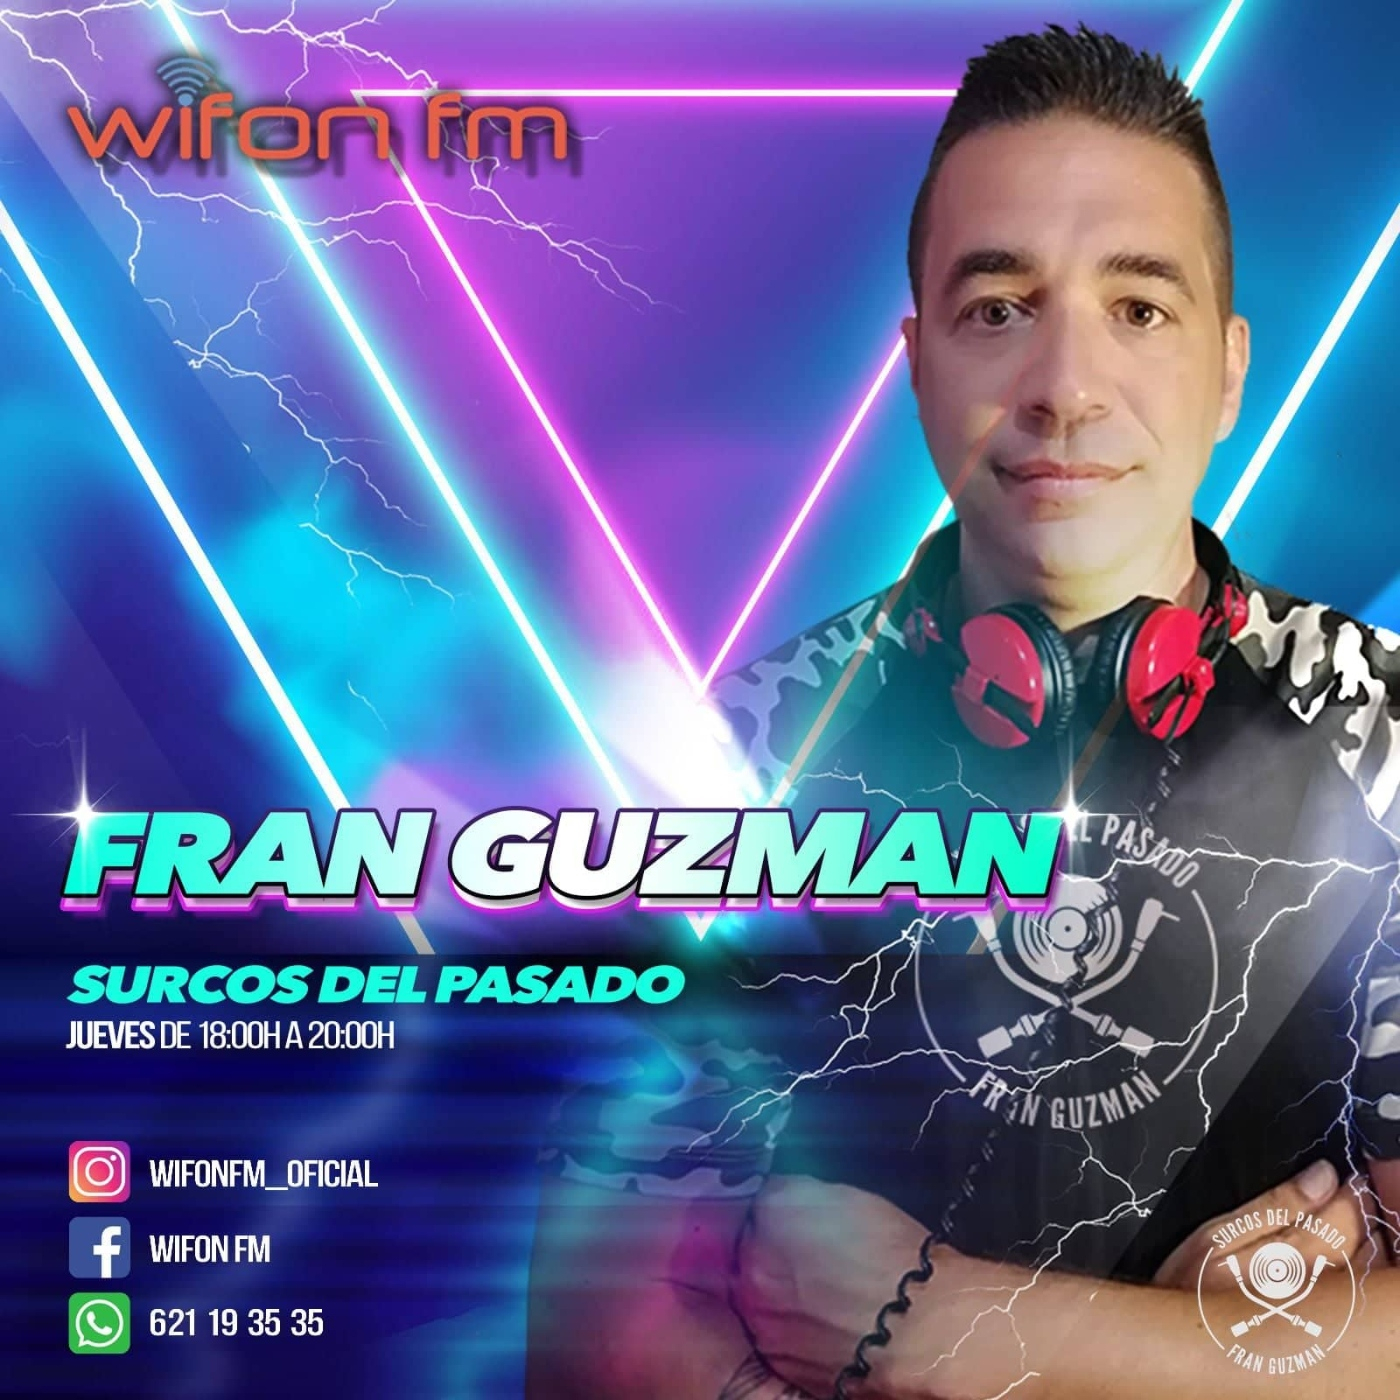 Fran Guzman Surcos del Pasado Wifon Fm T5.07